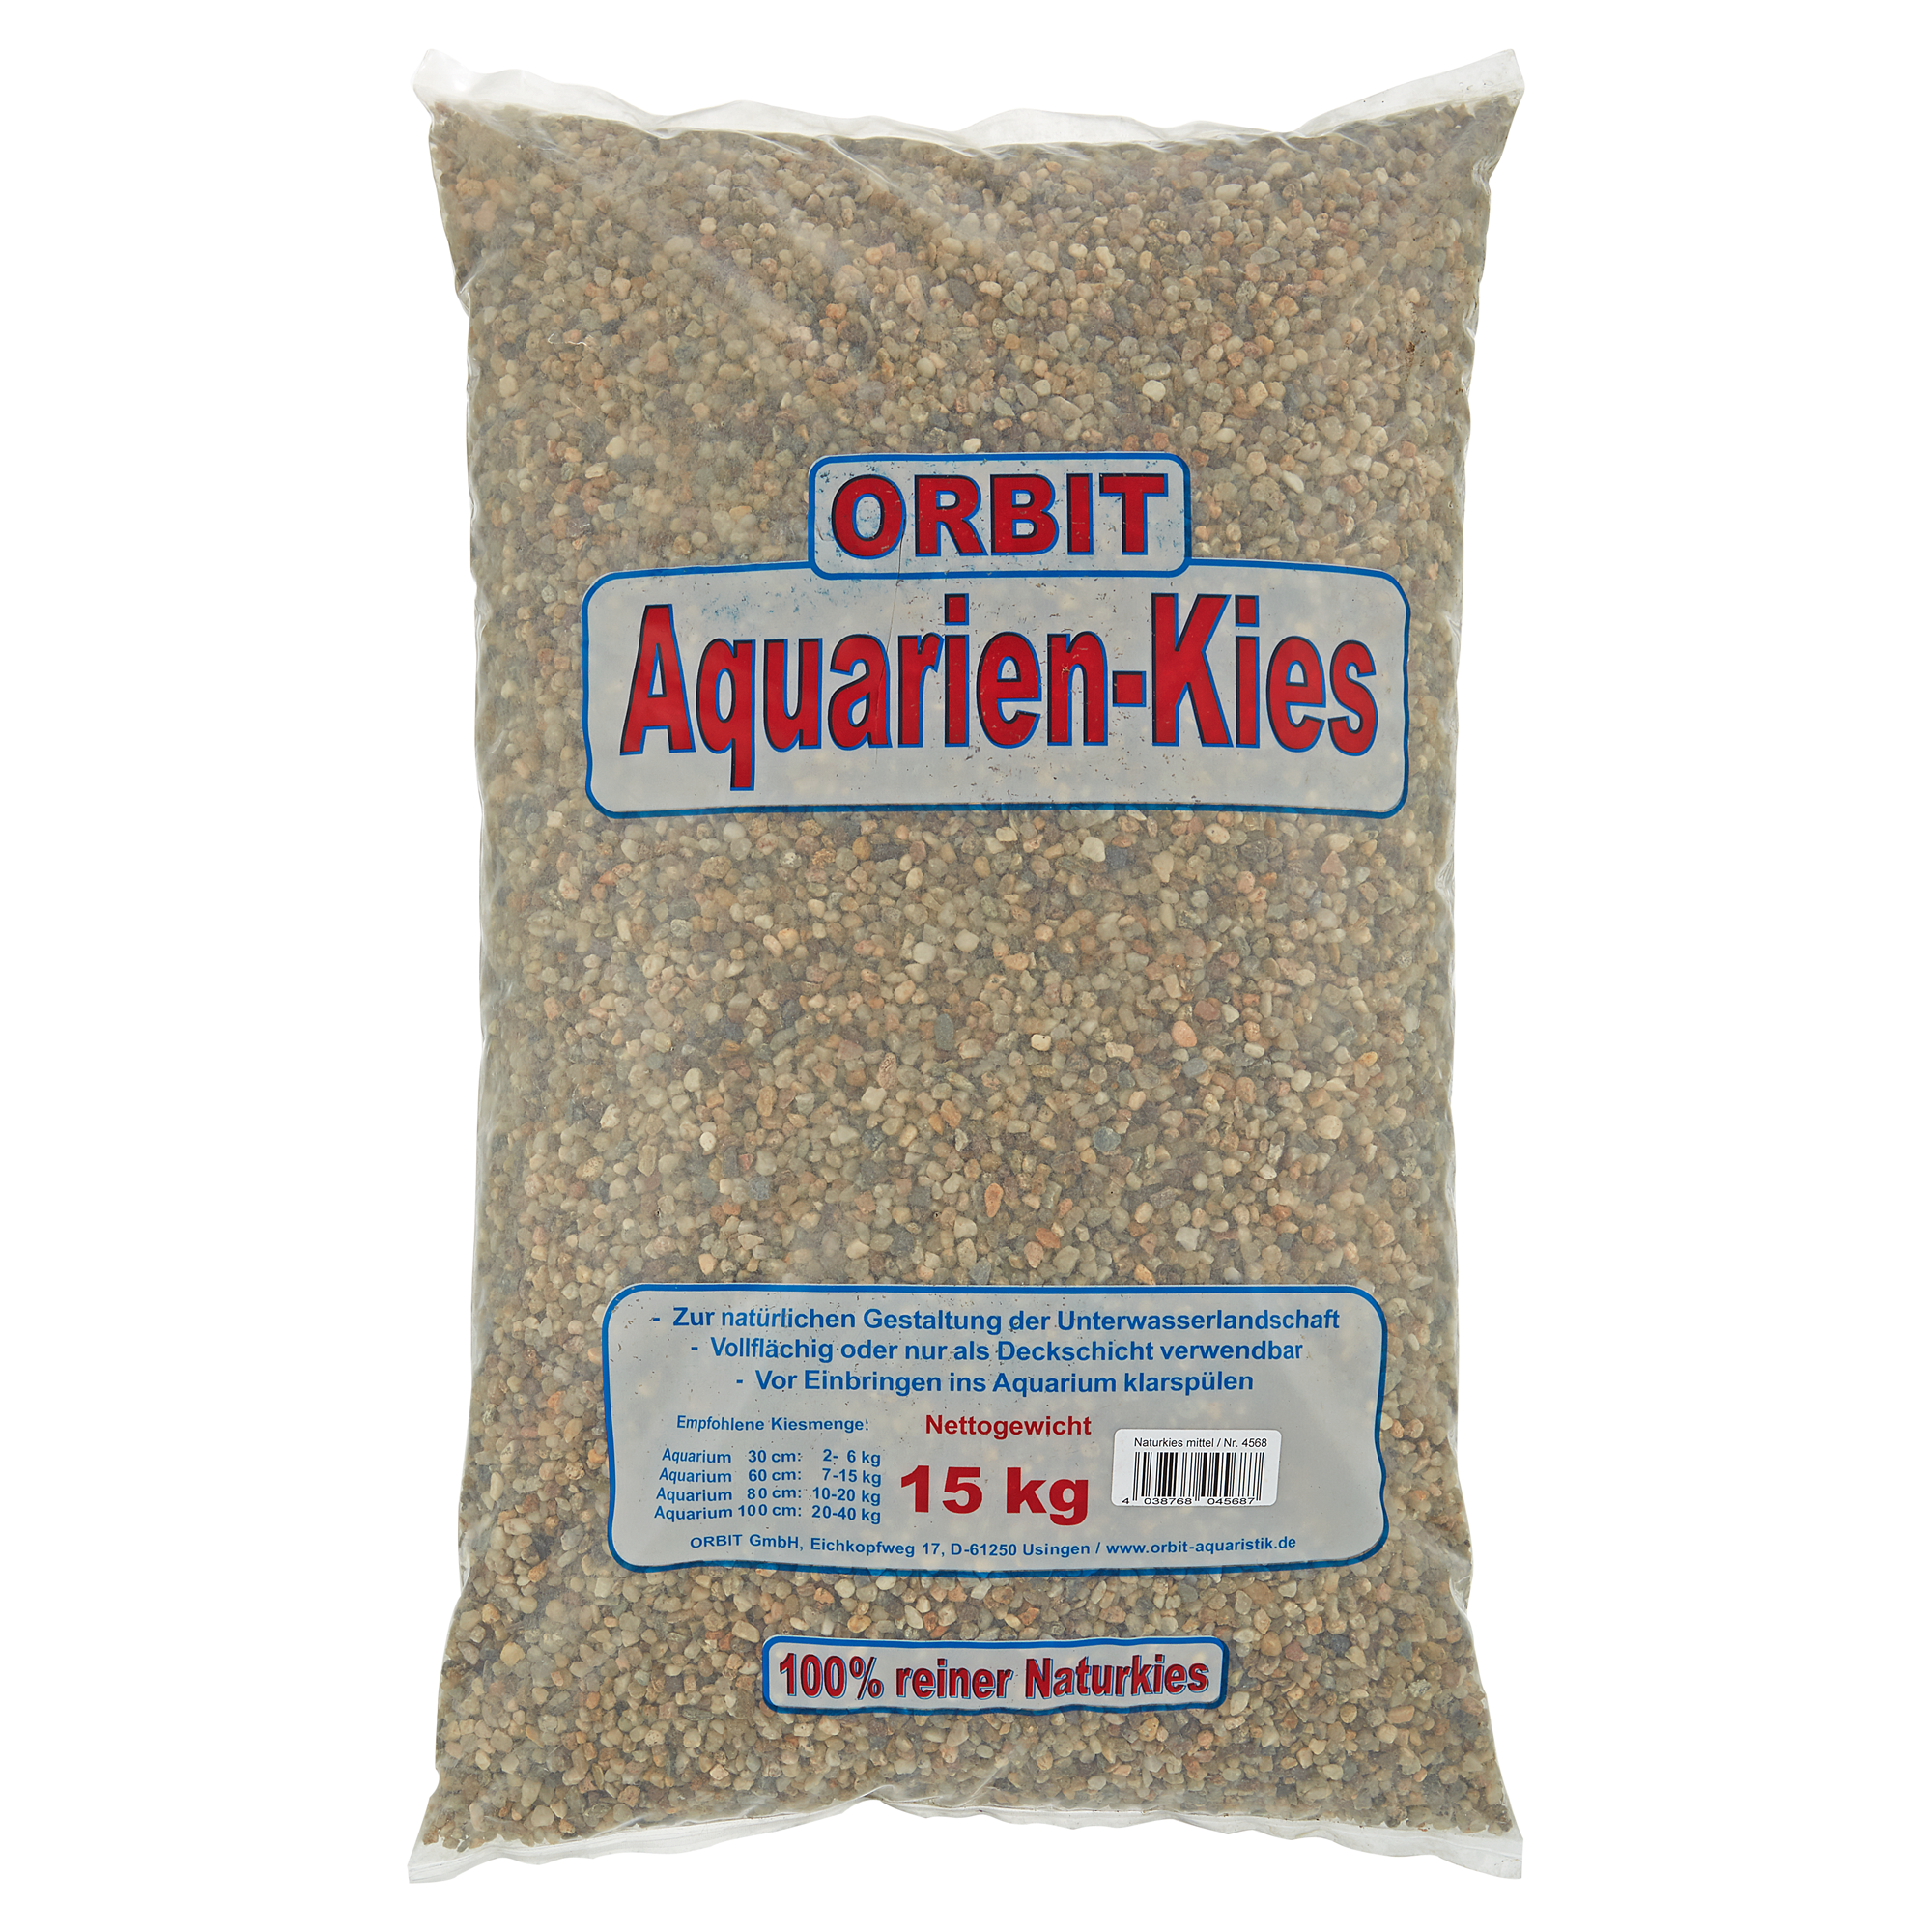 Aquarien-Kies Naturkies grau/braun Ø 3 - 4 mm 15 kg + product picture